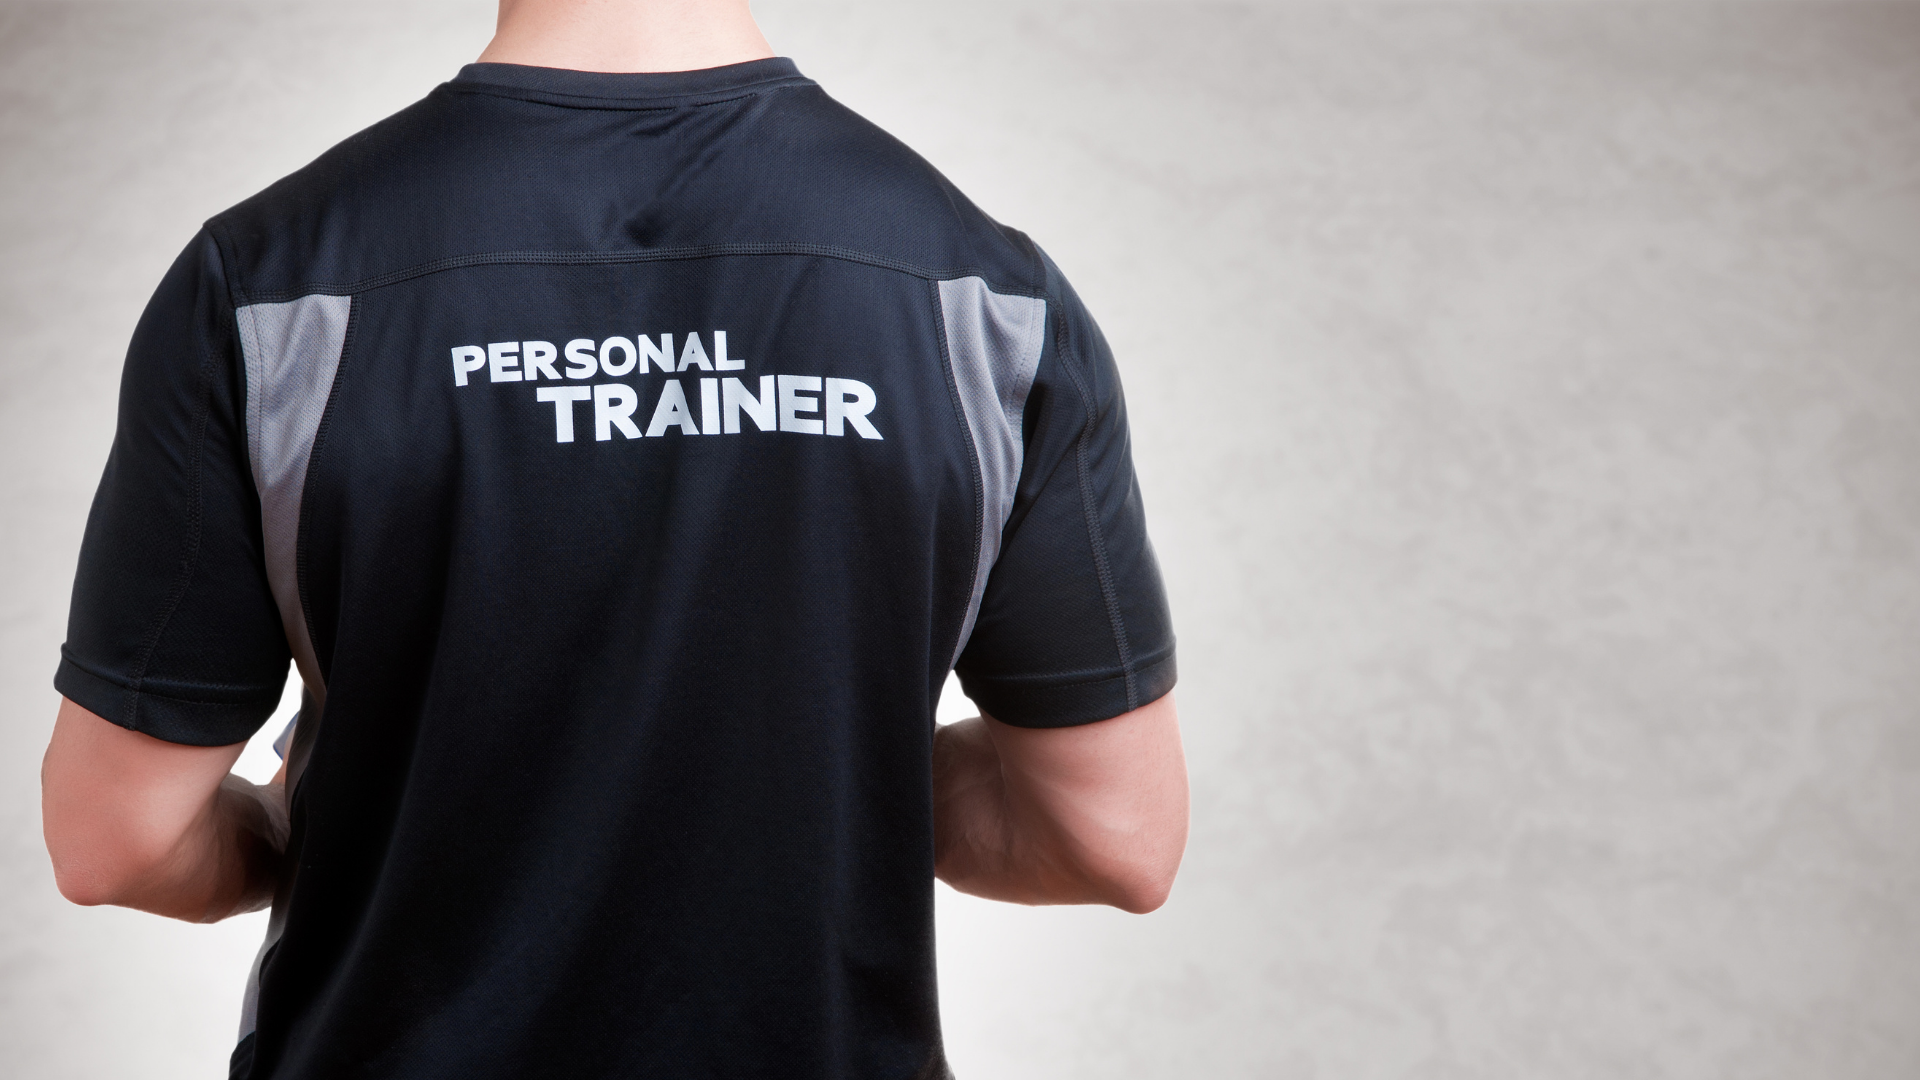 Personel trainer yazan tişörtlü bir kişinin görseli.